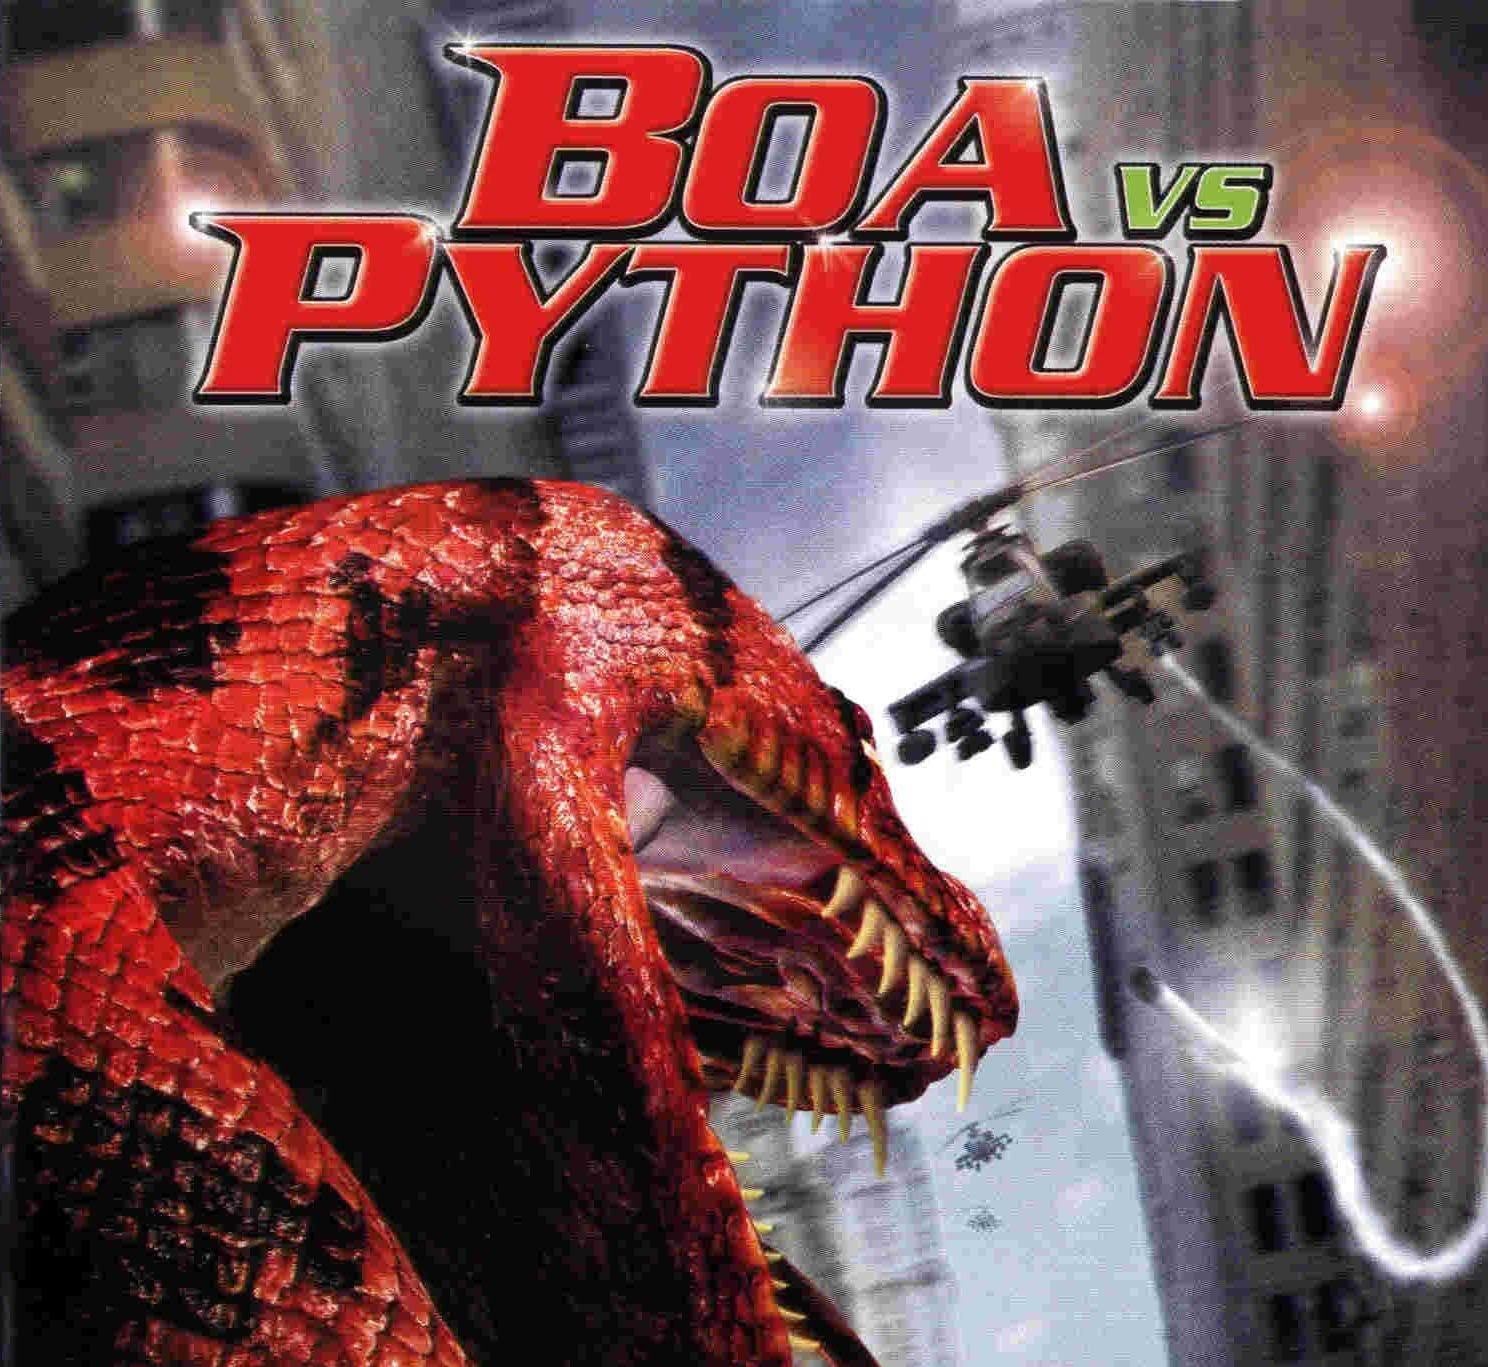 Boa vs python